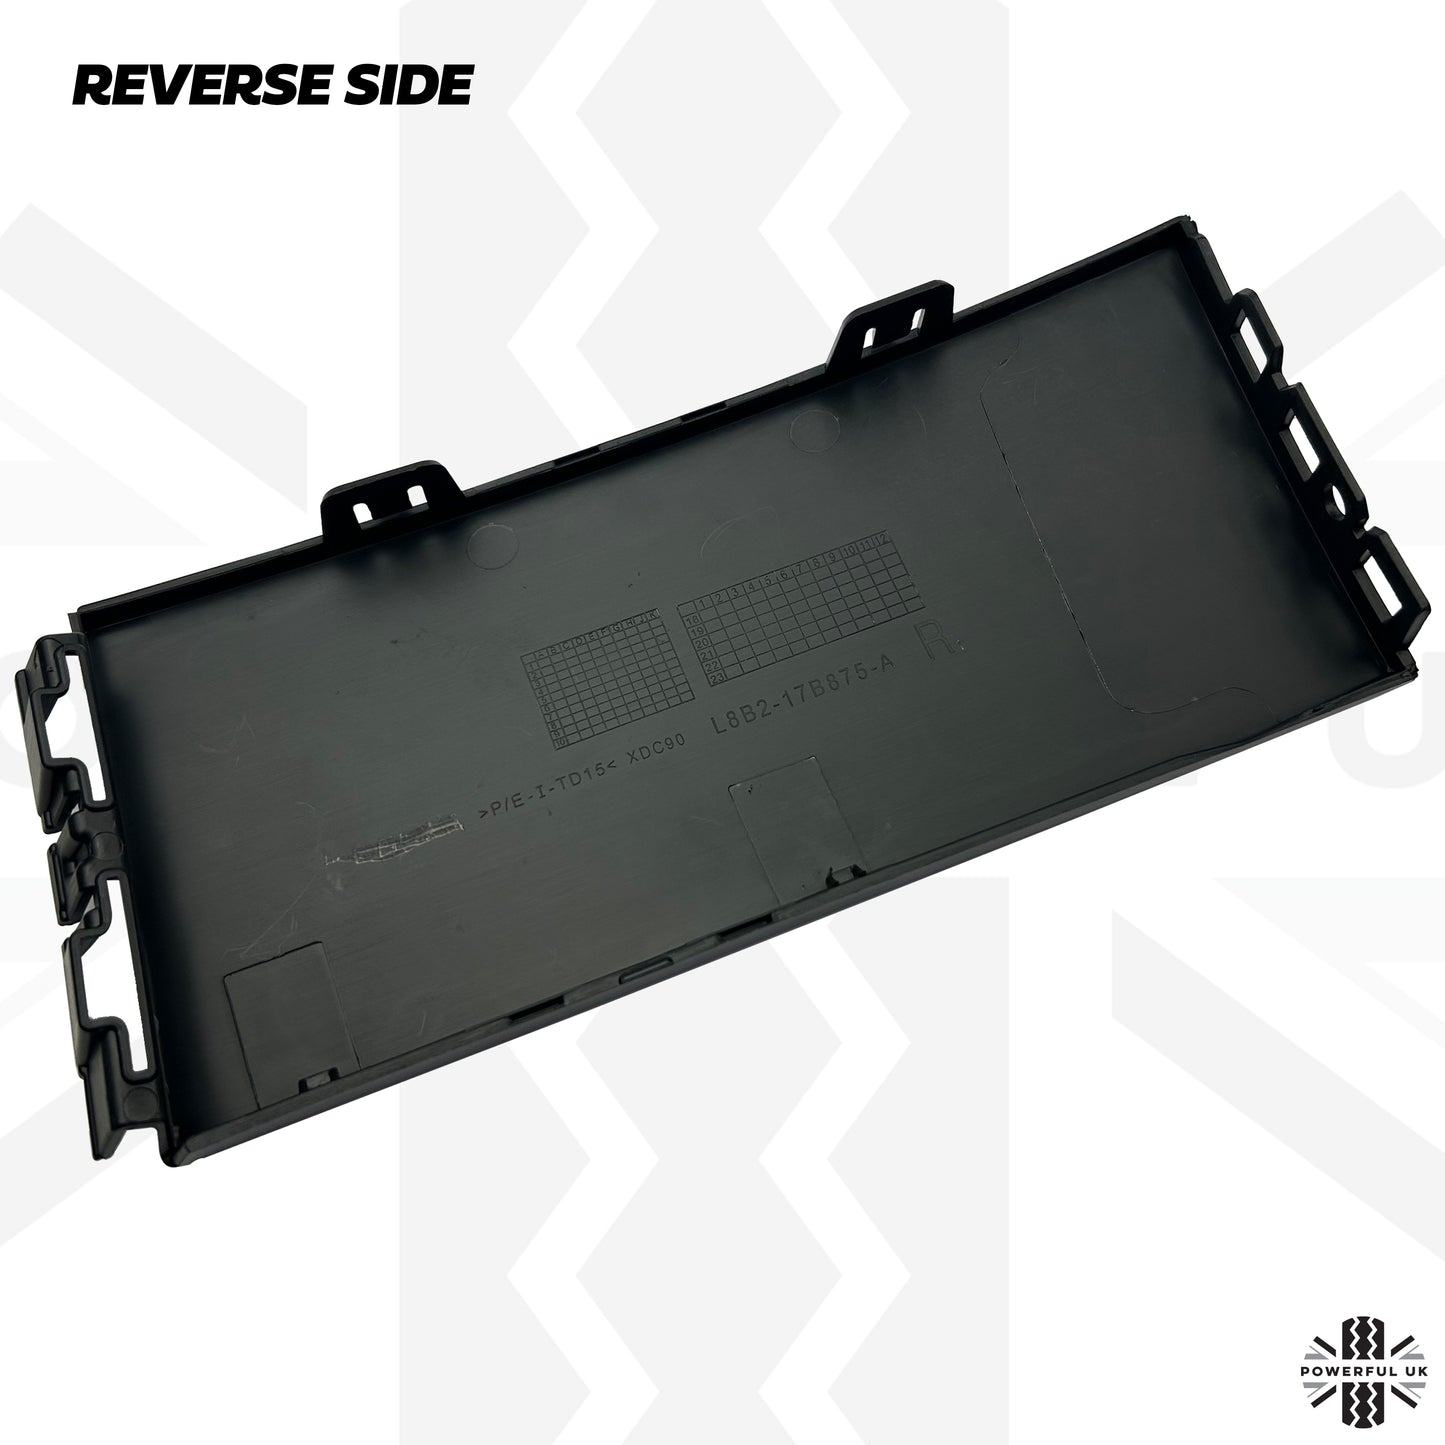 Under Headlight Bumper Insert Panel for Land Rover Defender L663 - Right